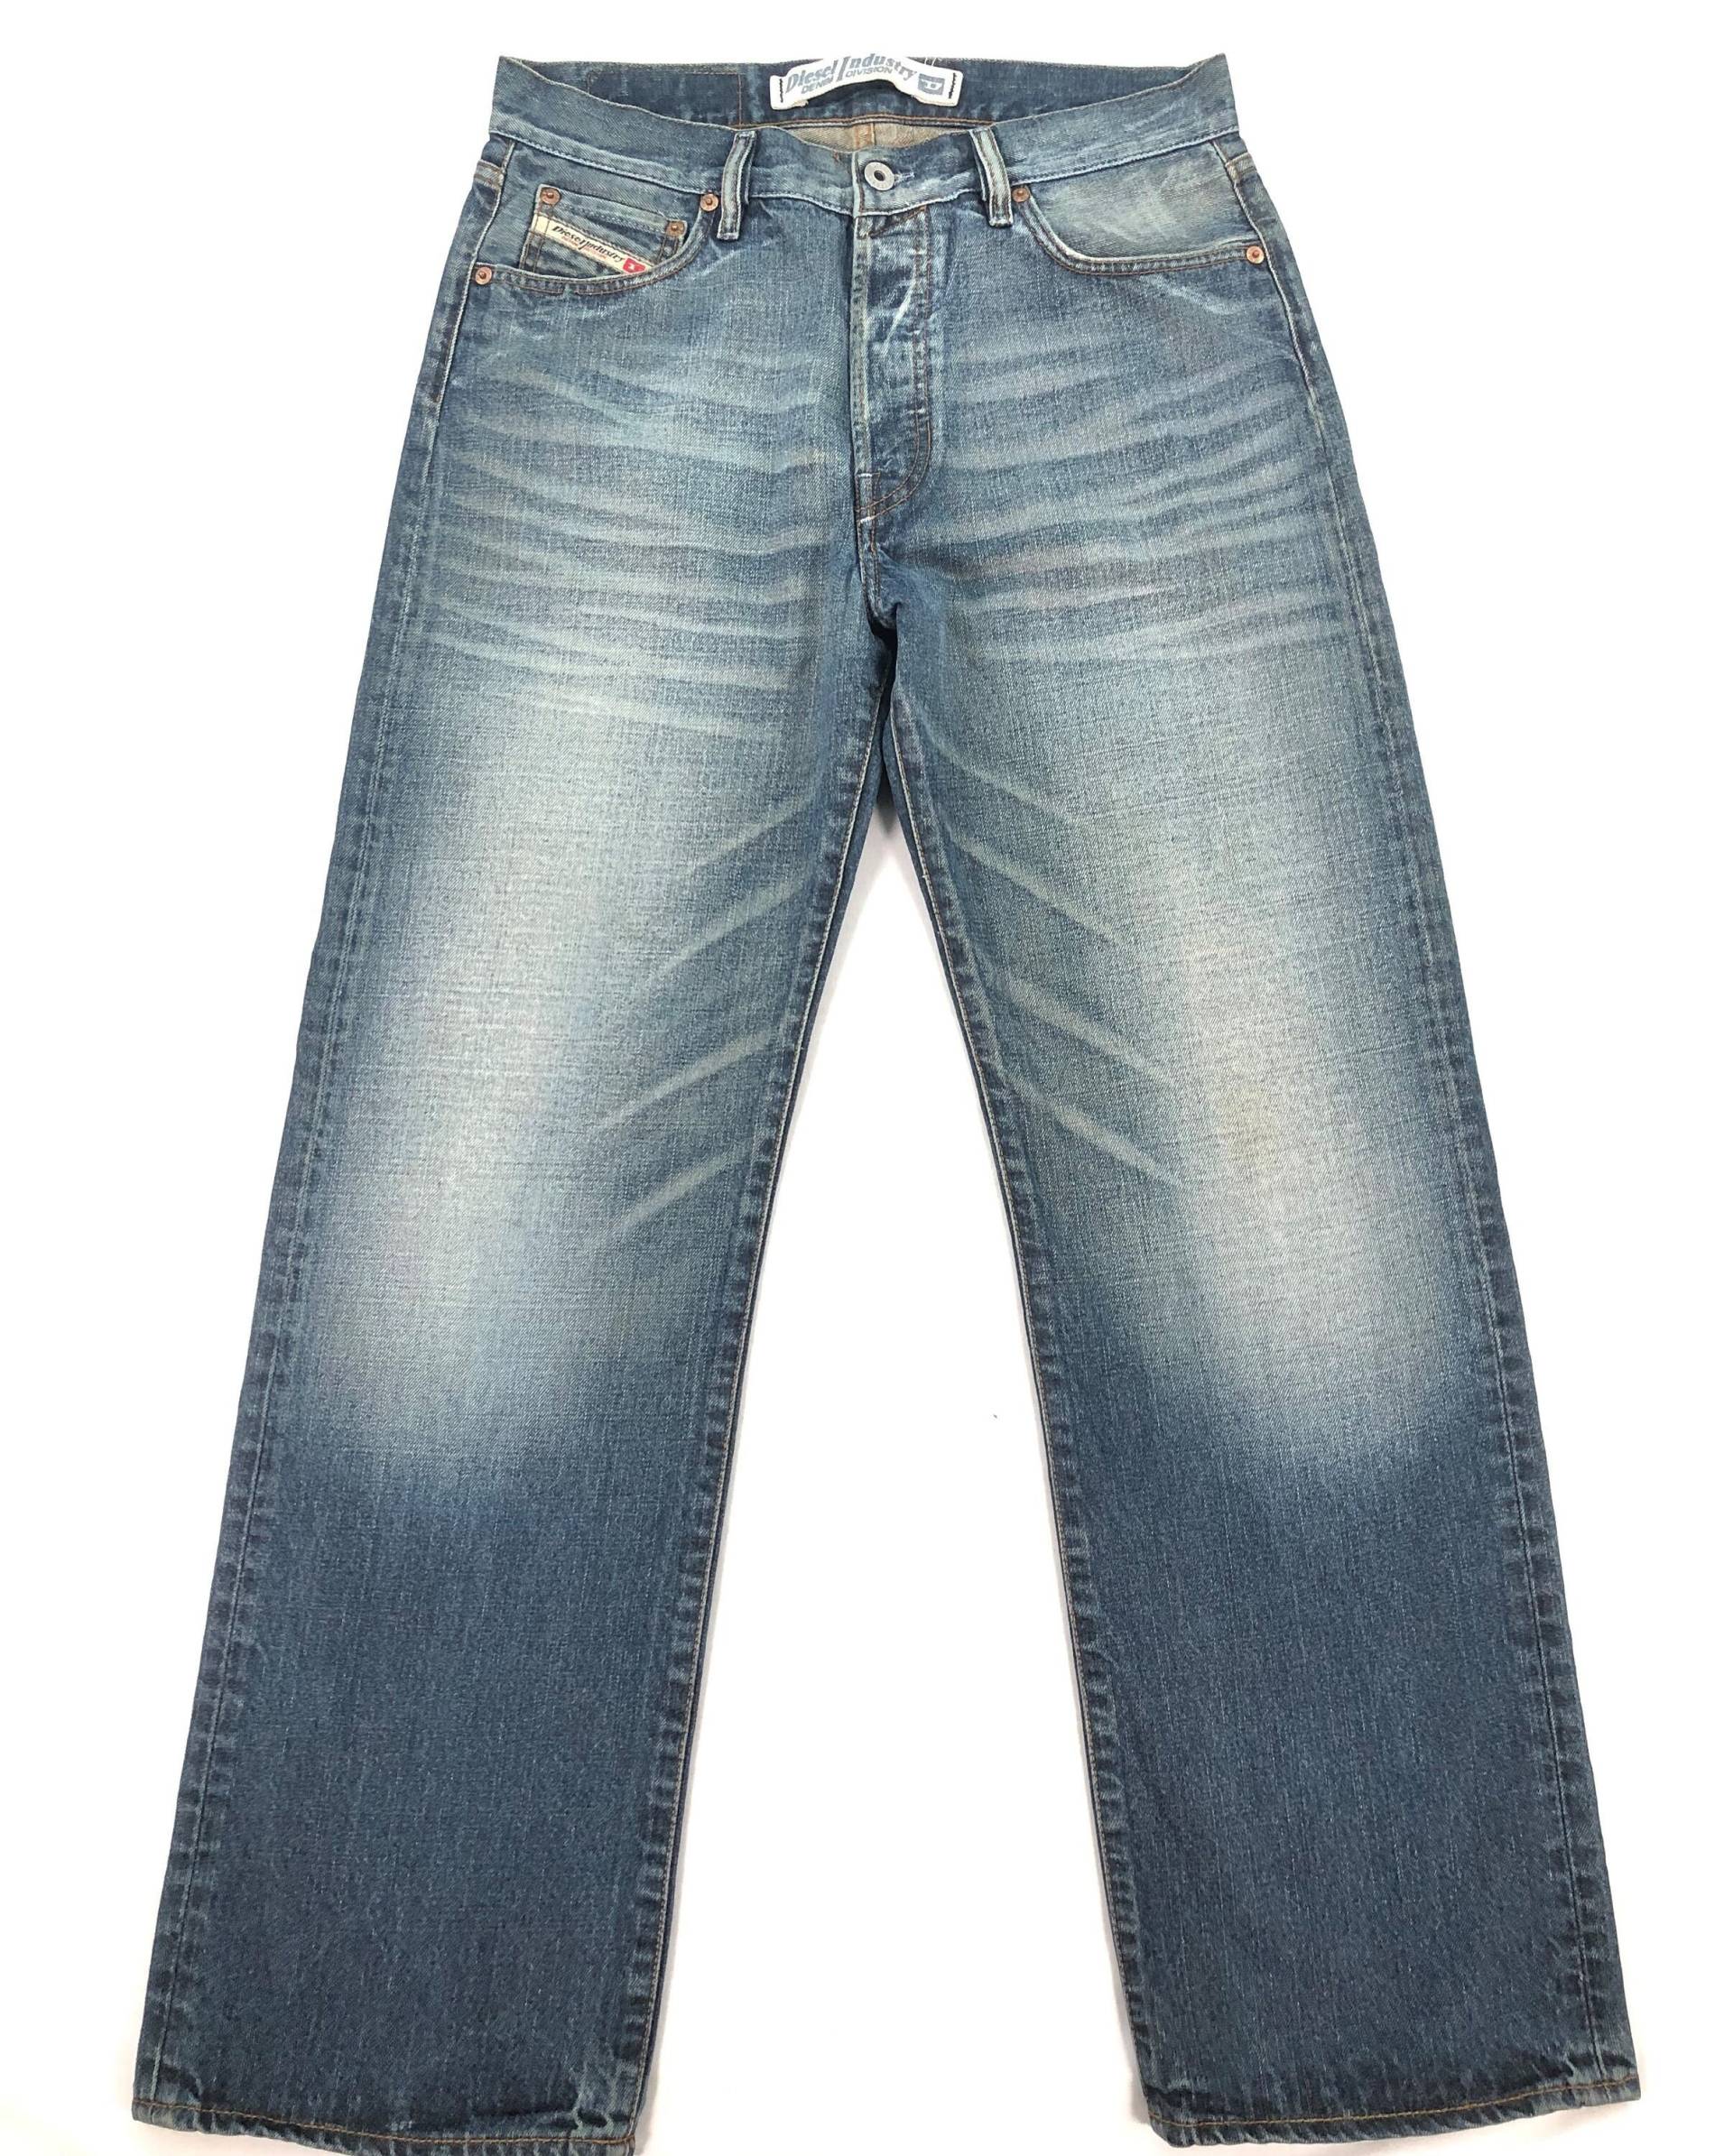 Vintage Diesel Light Wash Jeans Made in Italy, Diesel Men Jeans, Blue Taille 31 von RezekiShopRoom